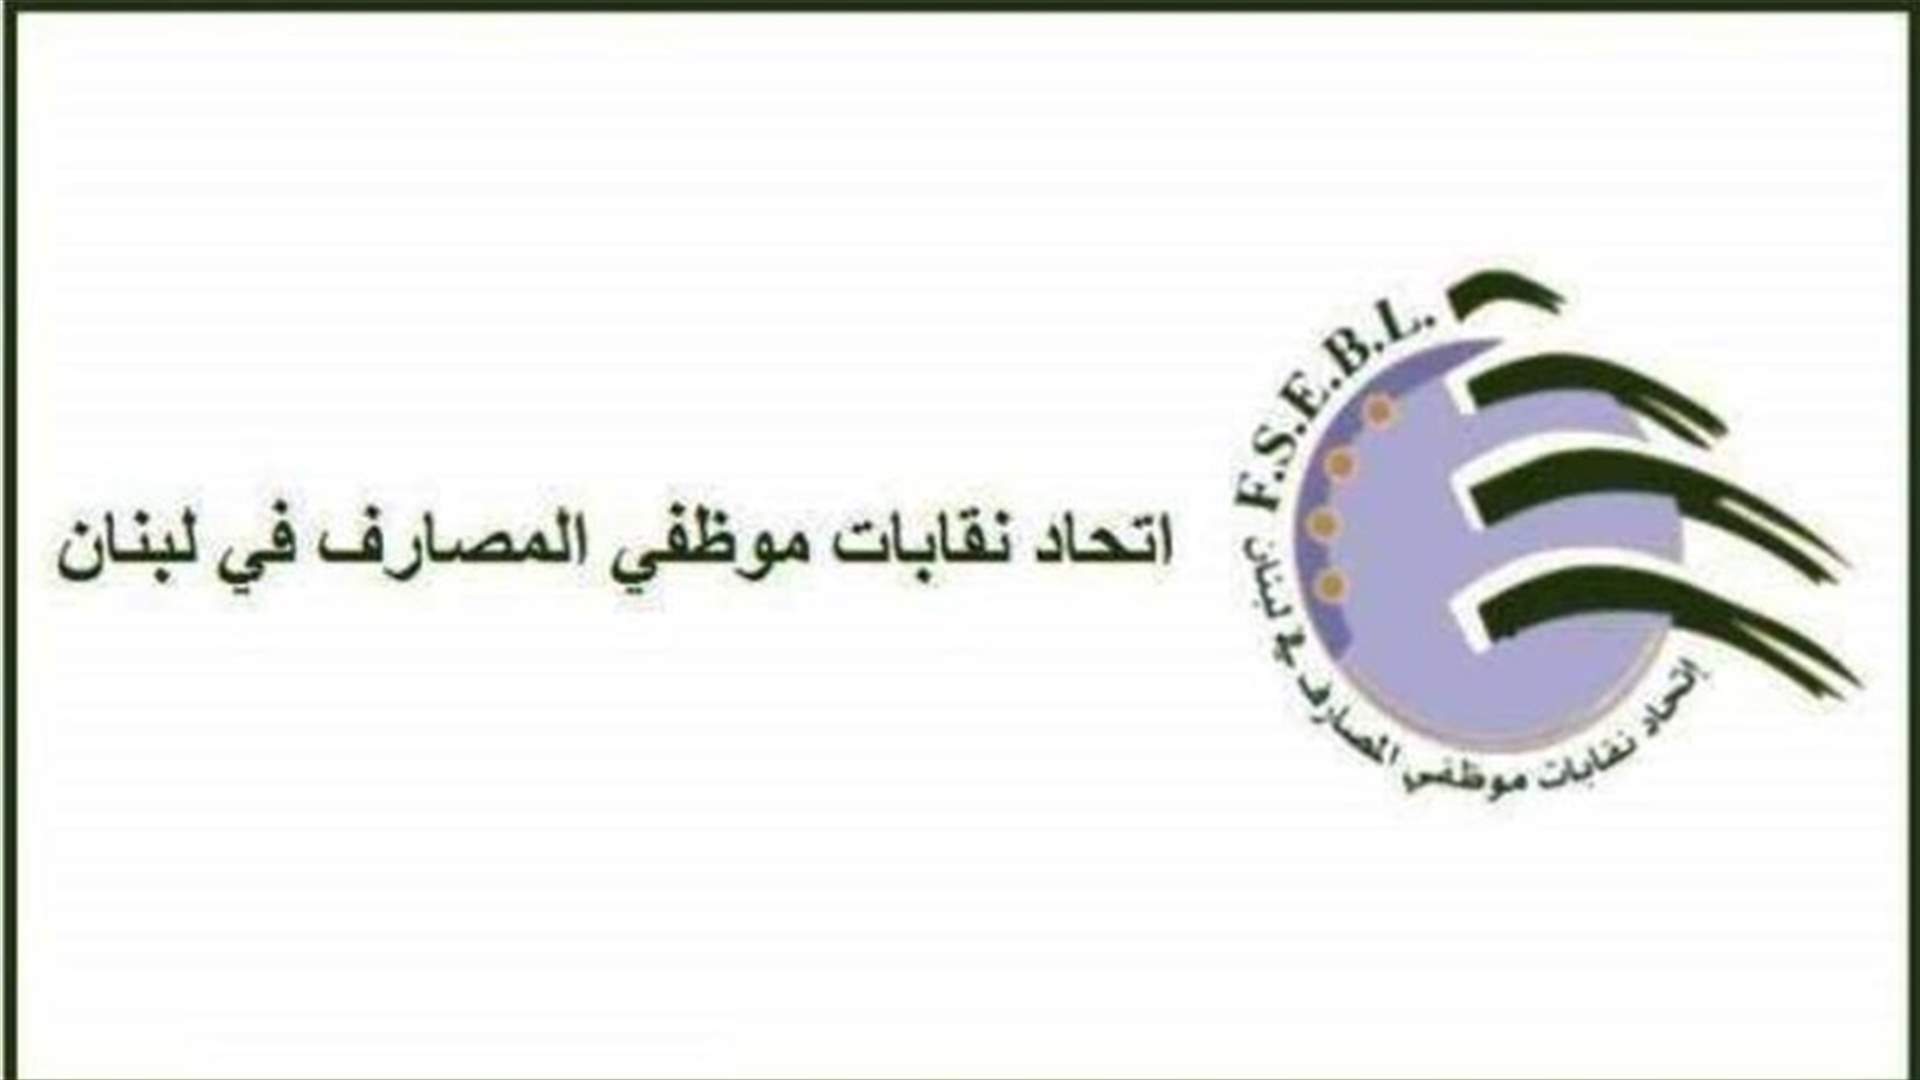 اتحاد نقابات موظفي المصارف: إستقالة الأسمر قرار صائب